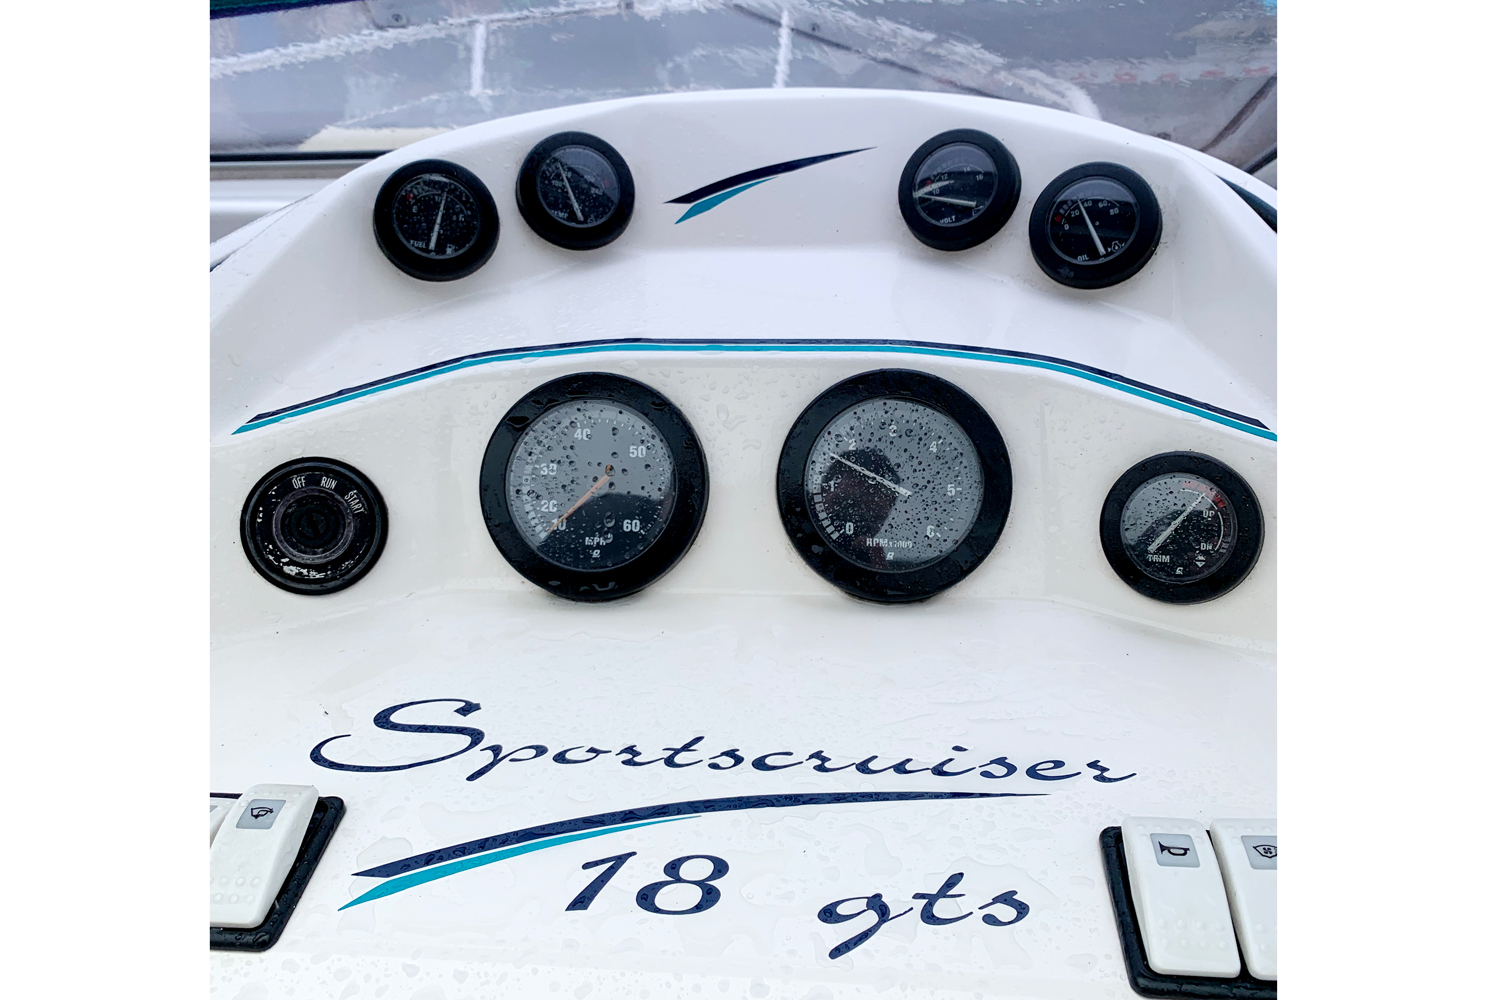 Fletcher Sportscruiser 18 GTS - engine gauges